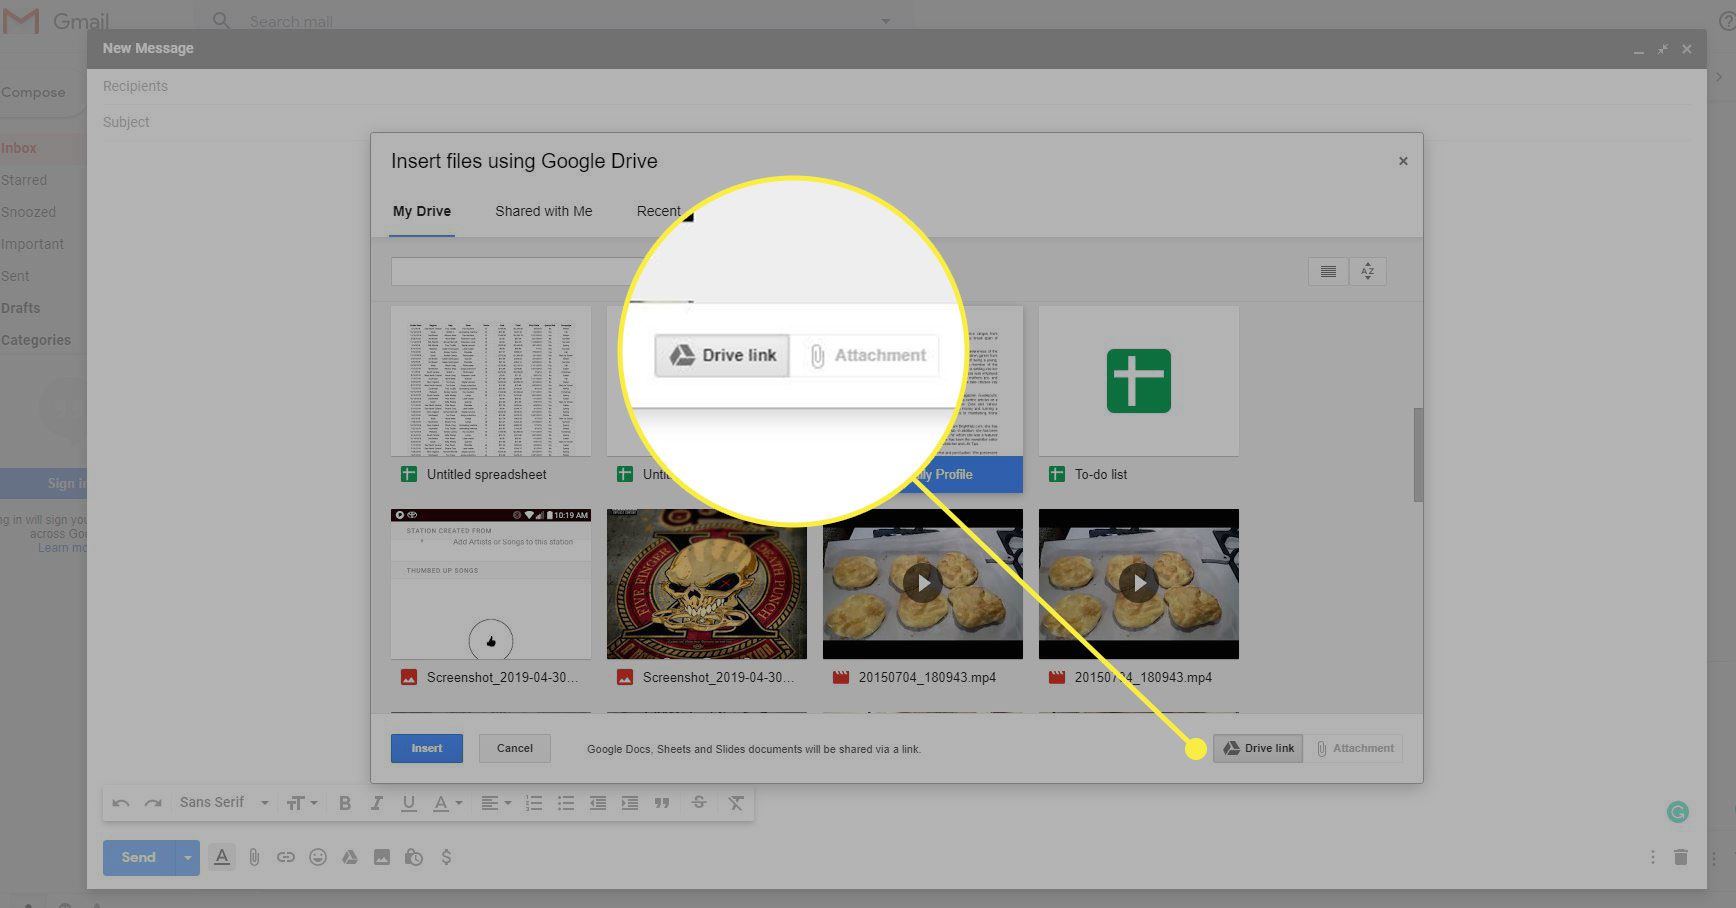 En skärmdump av fönstret "Infoga filer" i Gmail med knapparna "Drive link" och "Attachment" markerade